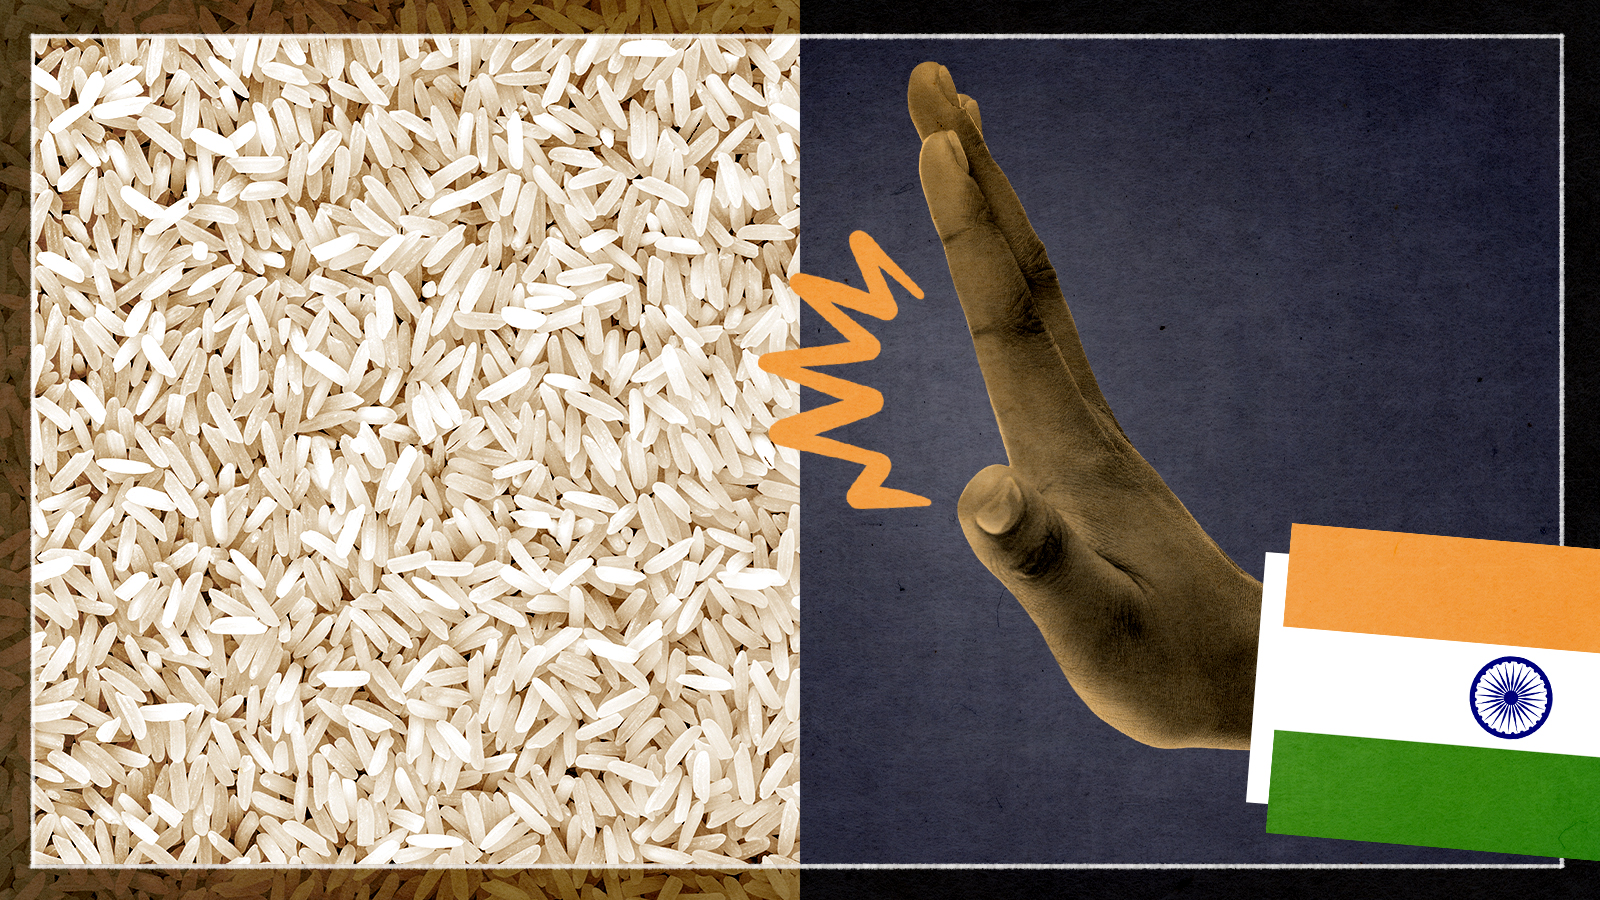 Phần lớn lệnh cấm và hạn chế đối với xuất khẩu gạo là nhằm mục đích duy trì nguồn cung nội địa của Ấn Độ. Ảnh: @AFP.